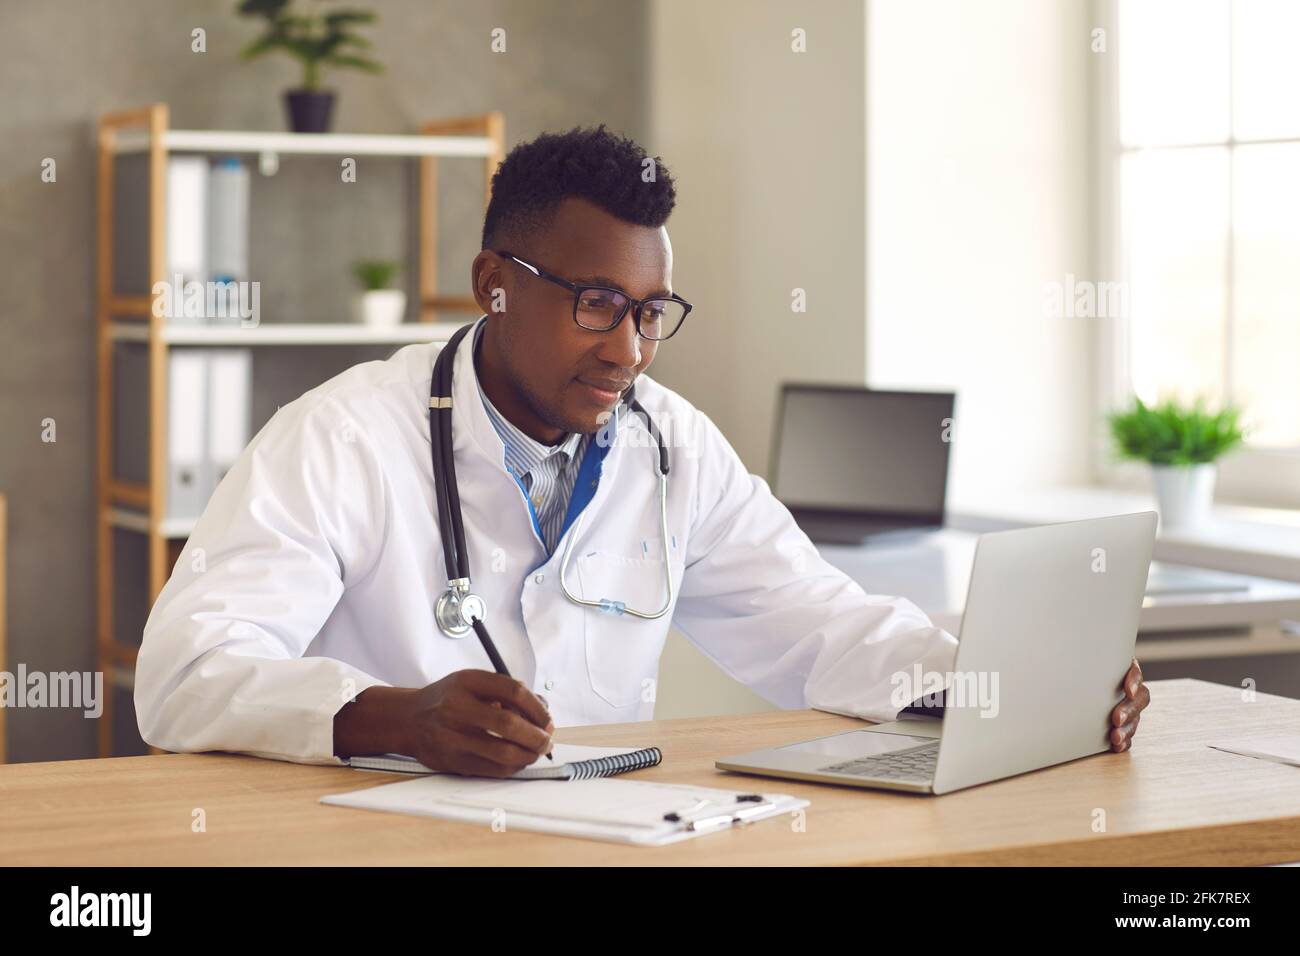 Médecin professionnel de la santé regardant l'écran d'ordinateur portable et écrivant des notes sur papier Banque D'Images